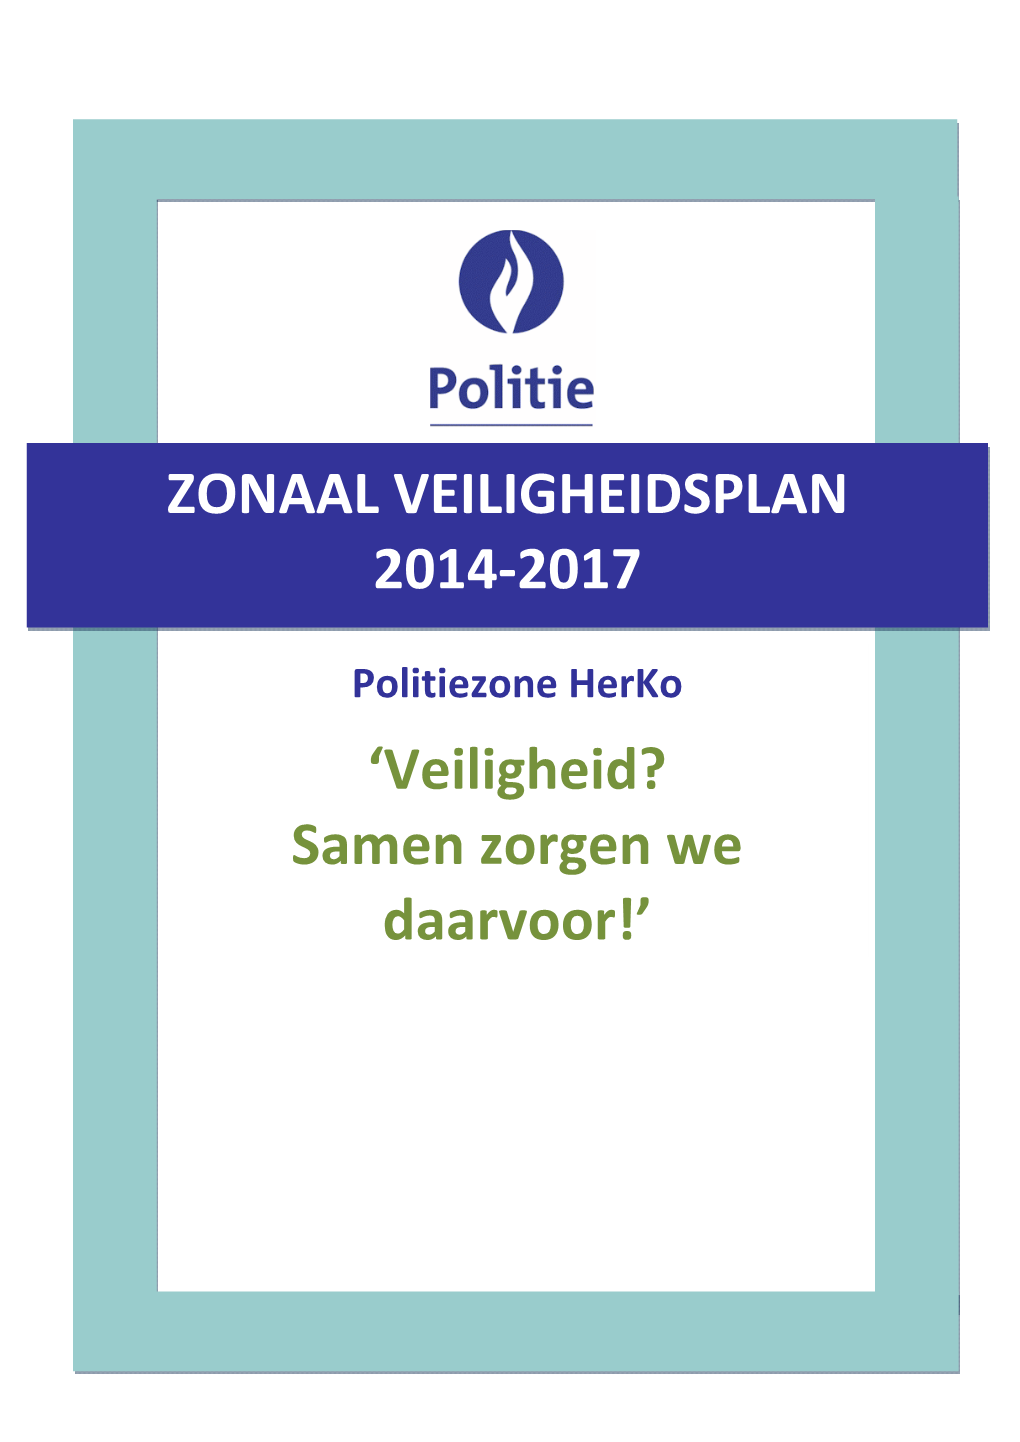 ZVP 2014-2017 Lokale Politie Herko